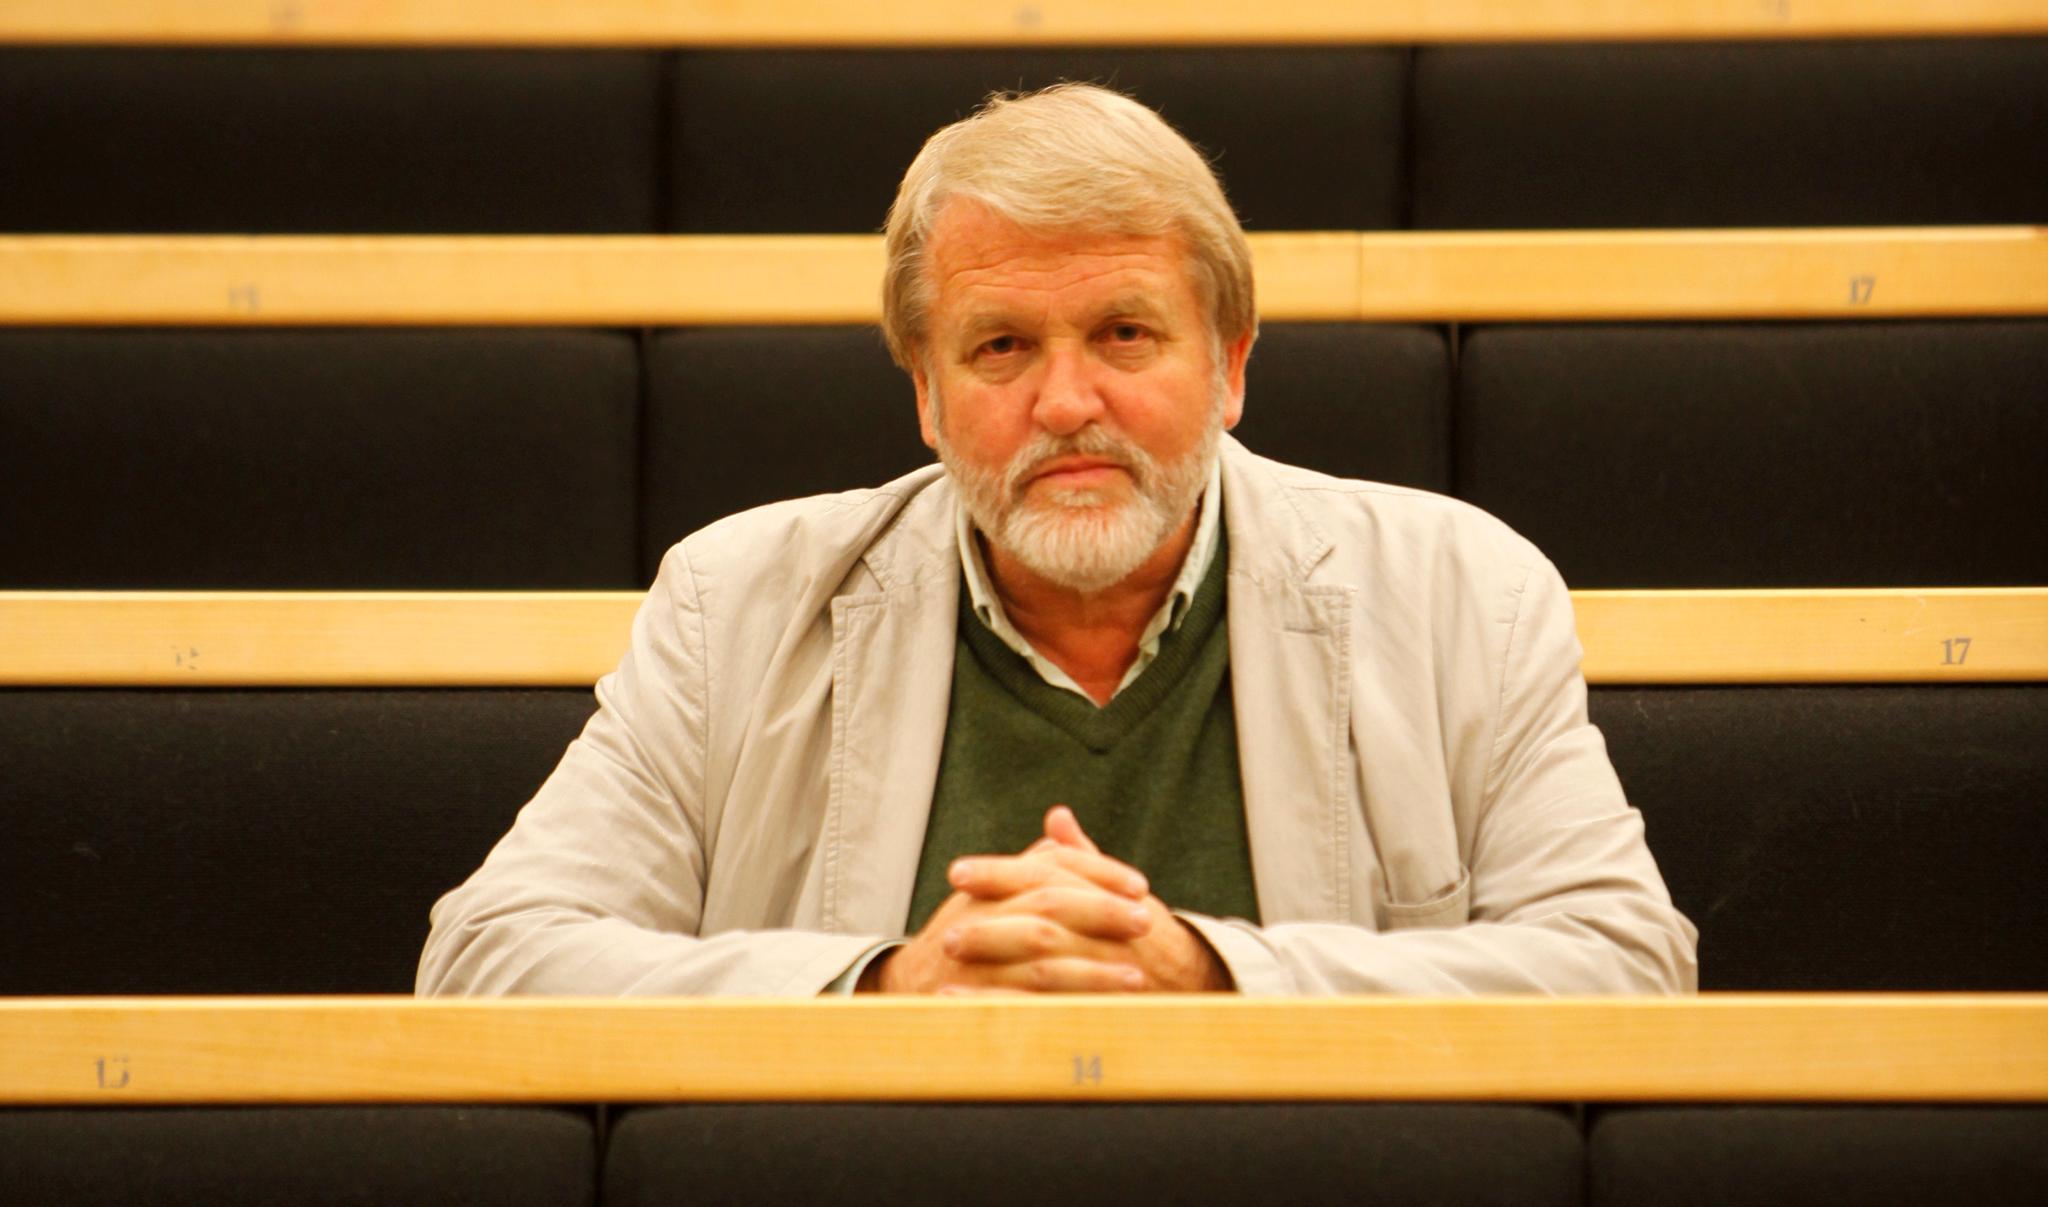 Debatten startet i sommer da professor Bernt Hagtvet (bildet) skrev en kronikk om forfatteren Dag Solstad og kommunisme.